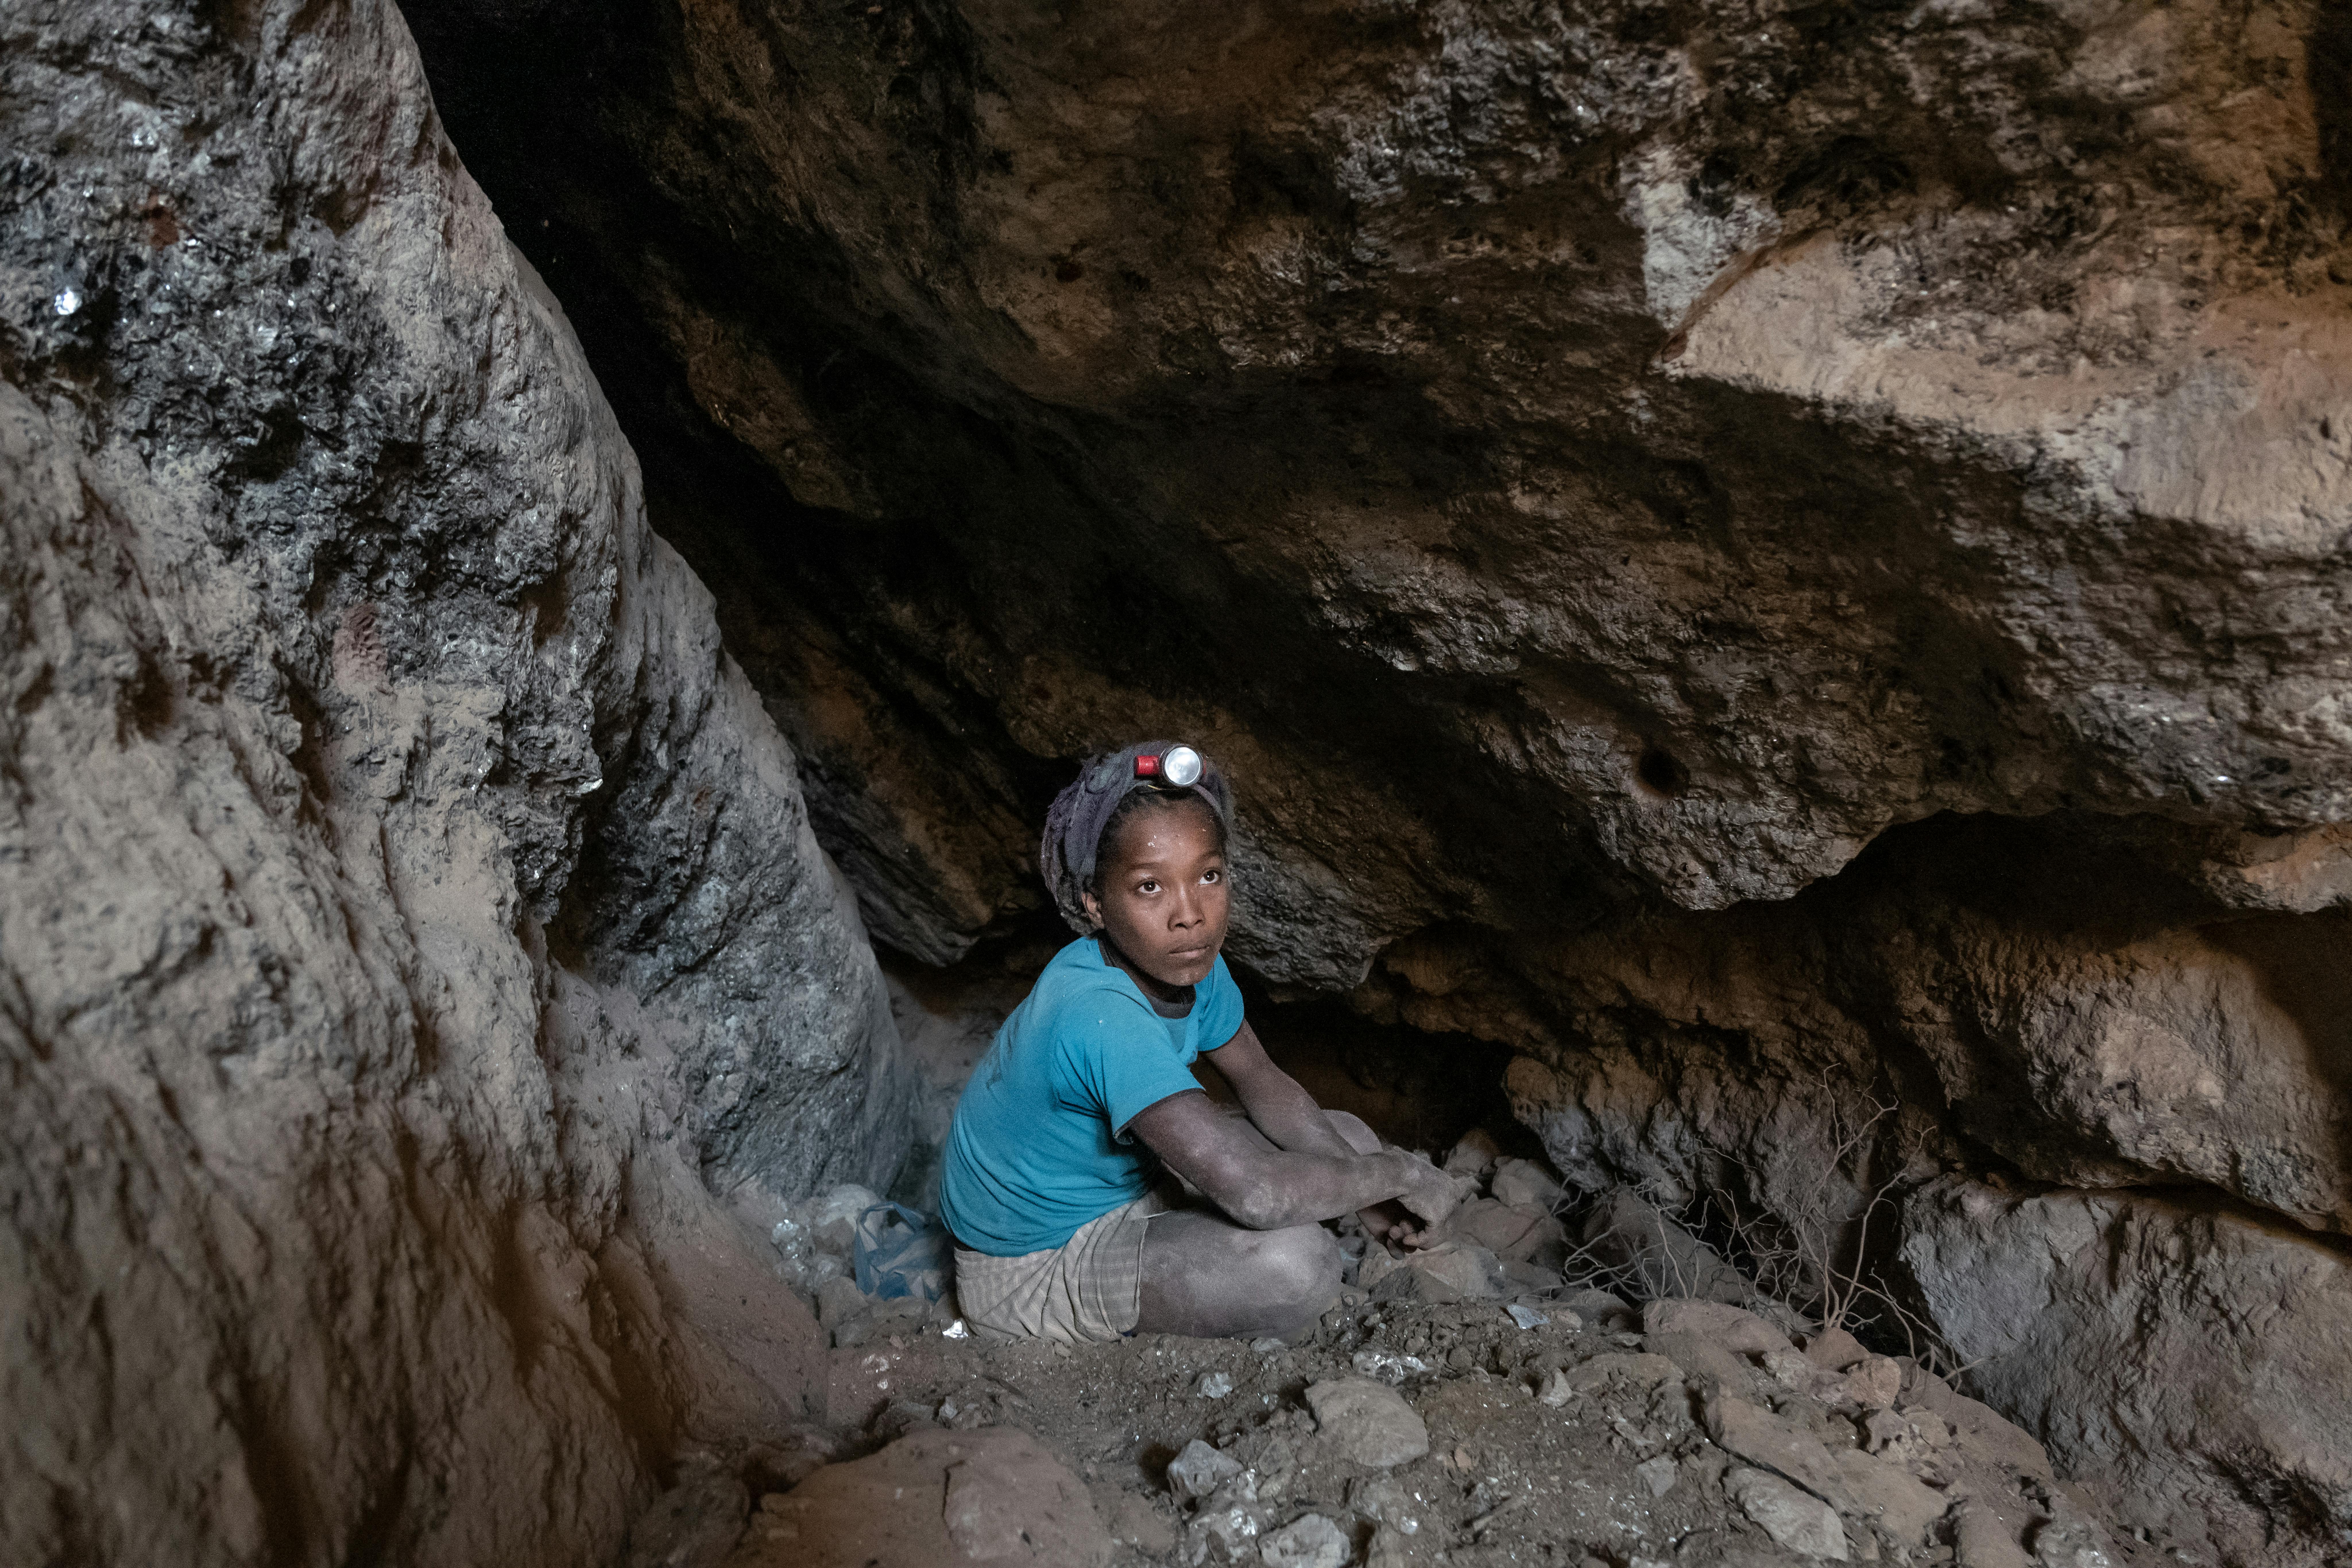 Nina 13 anni, ha abbandonato la scuola e lavora nella miniera di Vohibola. Questa foto è stata scattata 15 metri sotto terra, dove Nina lavora per estrarre la Mica: un minerale che si trova comunemente in prodotti come cosmetici, vernici ed elettronica. L'estrazione della mica è spesso collegata alle peggiori forme di lavoro minorile in Madagascar